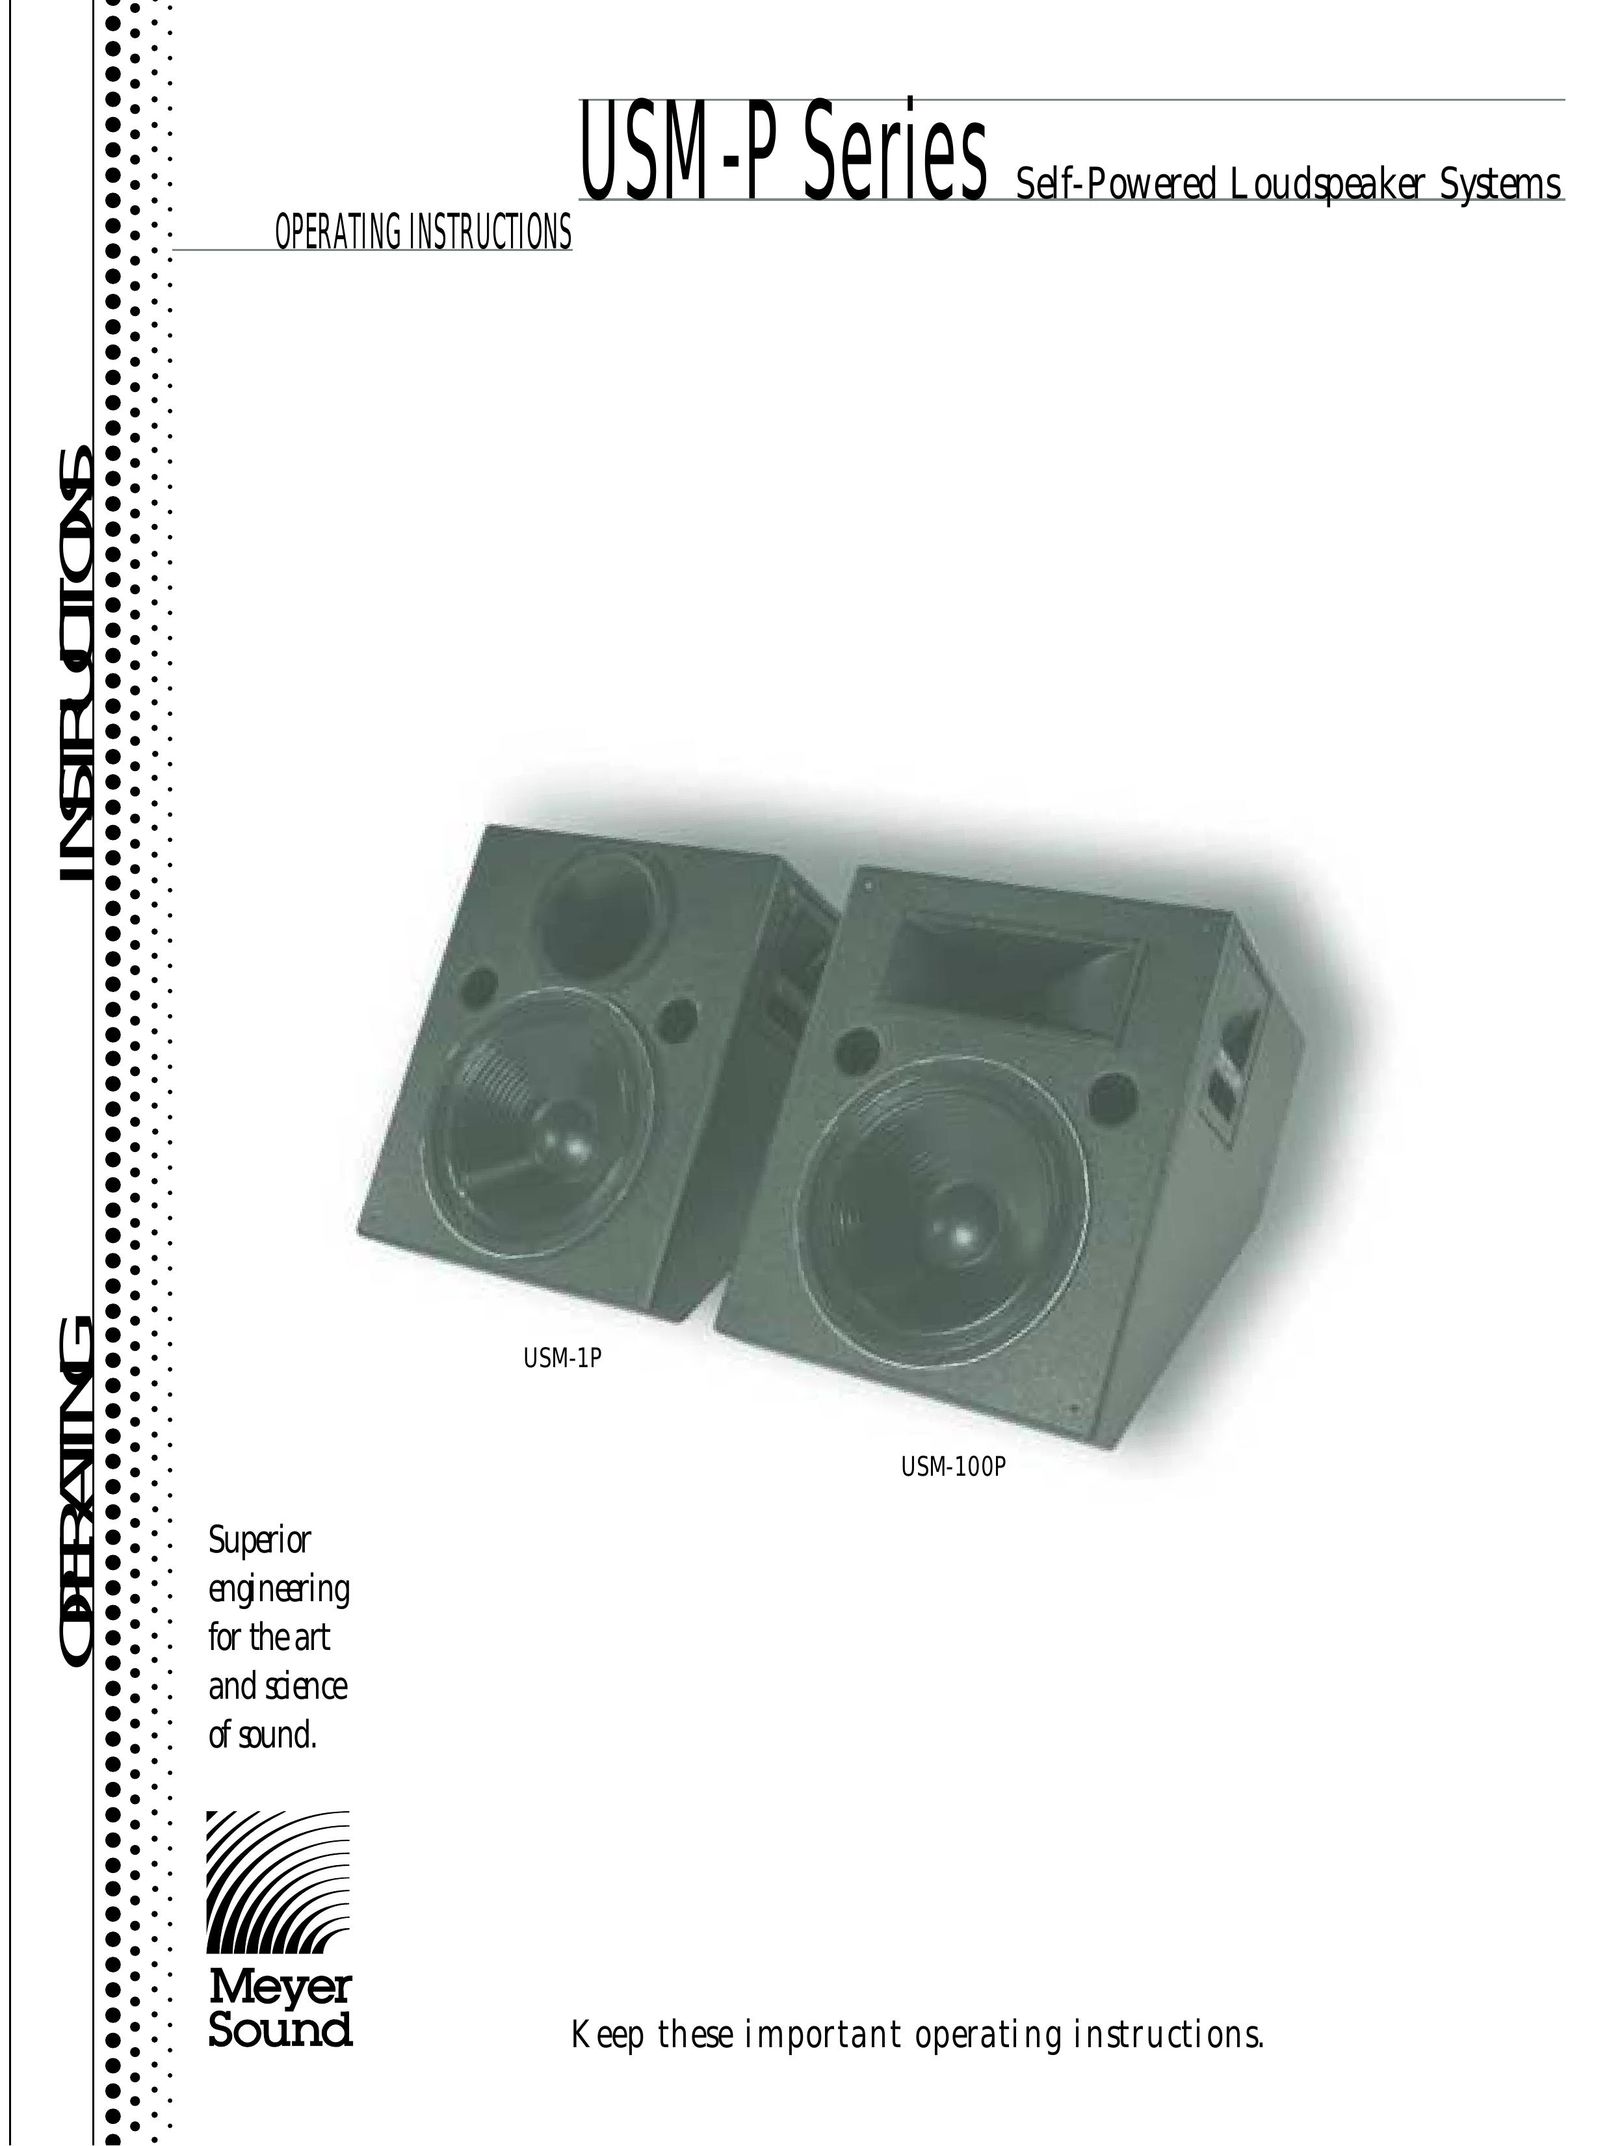 Meyer Sound USM-1P Portable Speaker User Manual